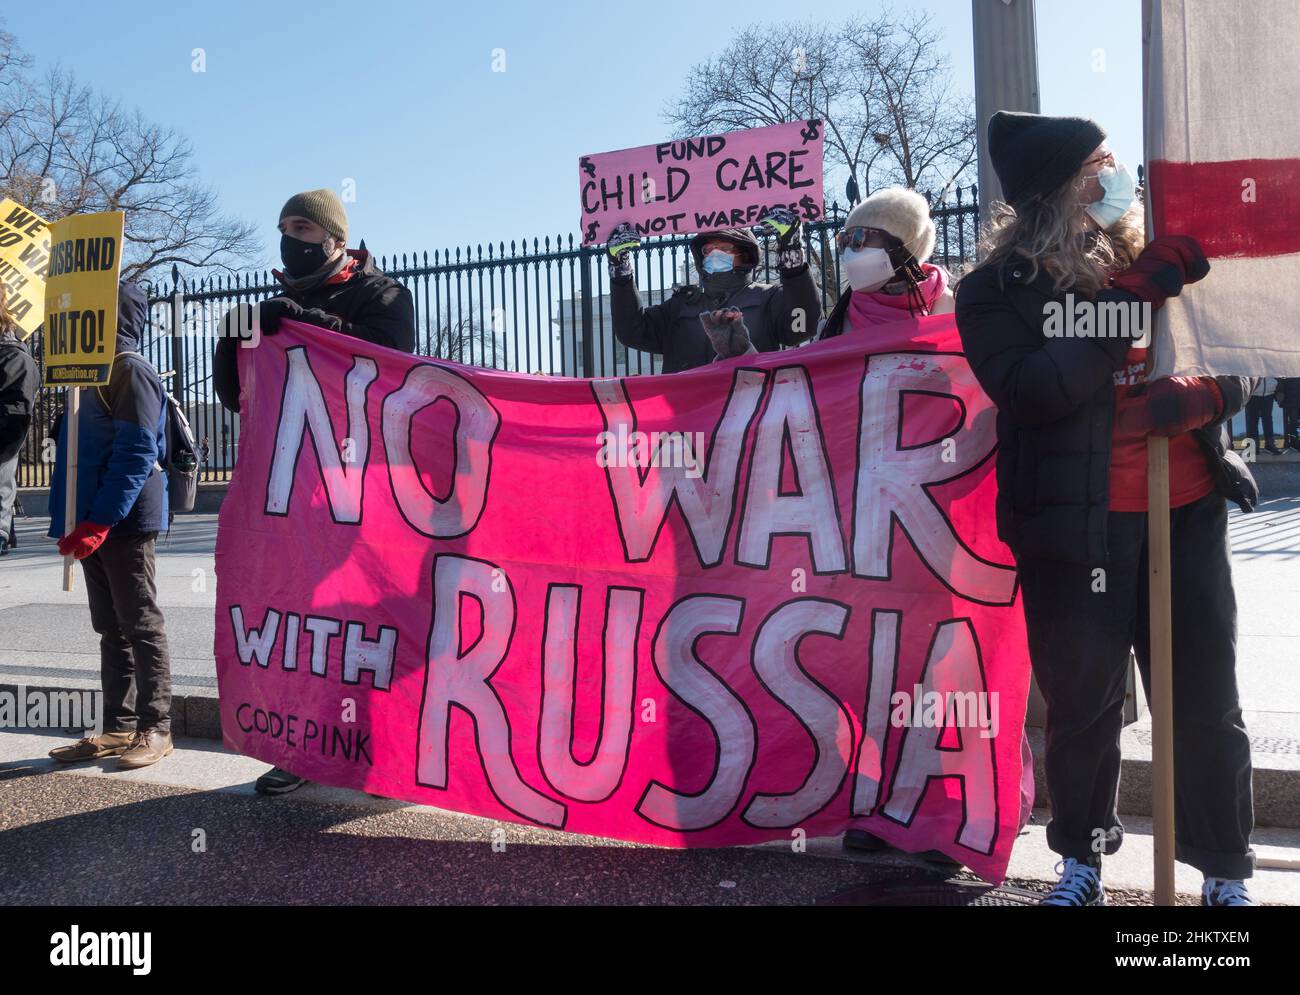 I manifestanti protestano davanti alla Casa Bianca contro quello che dicono è l'aggressione da parte della NATO e degli Stati Uniti verso la Russia sull'Ucraina, che temono porterà alla guerra basata sulle bugie.Feb 5, 2022 Foto Stock